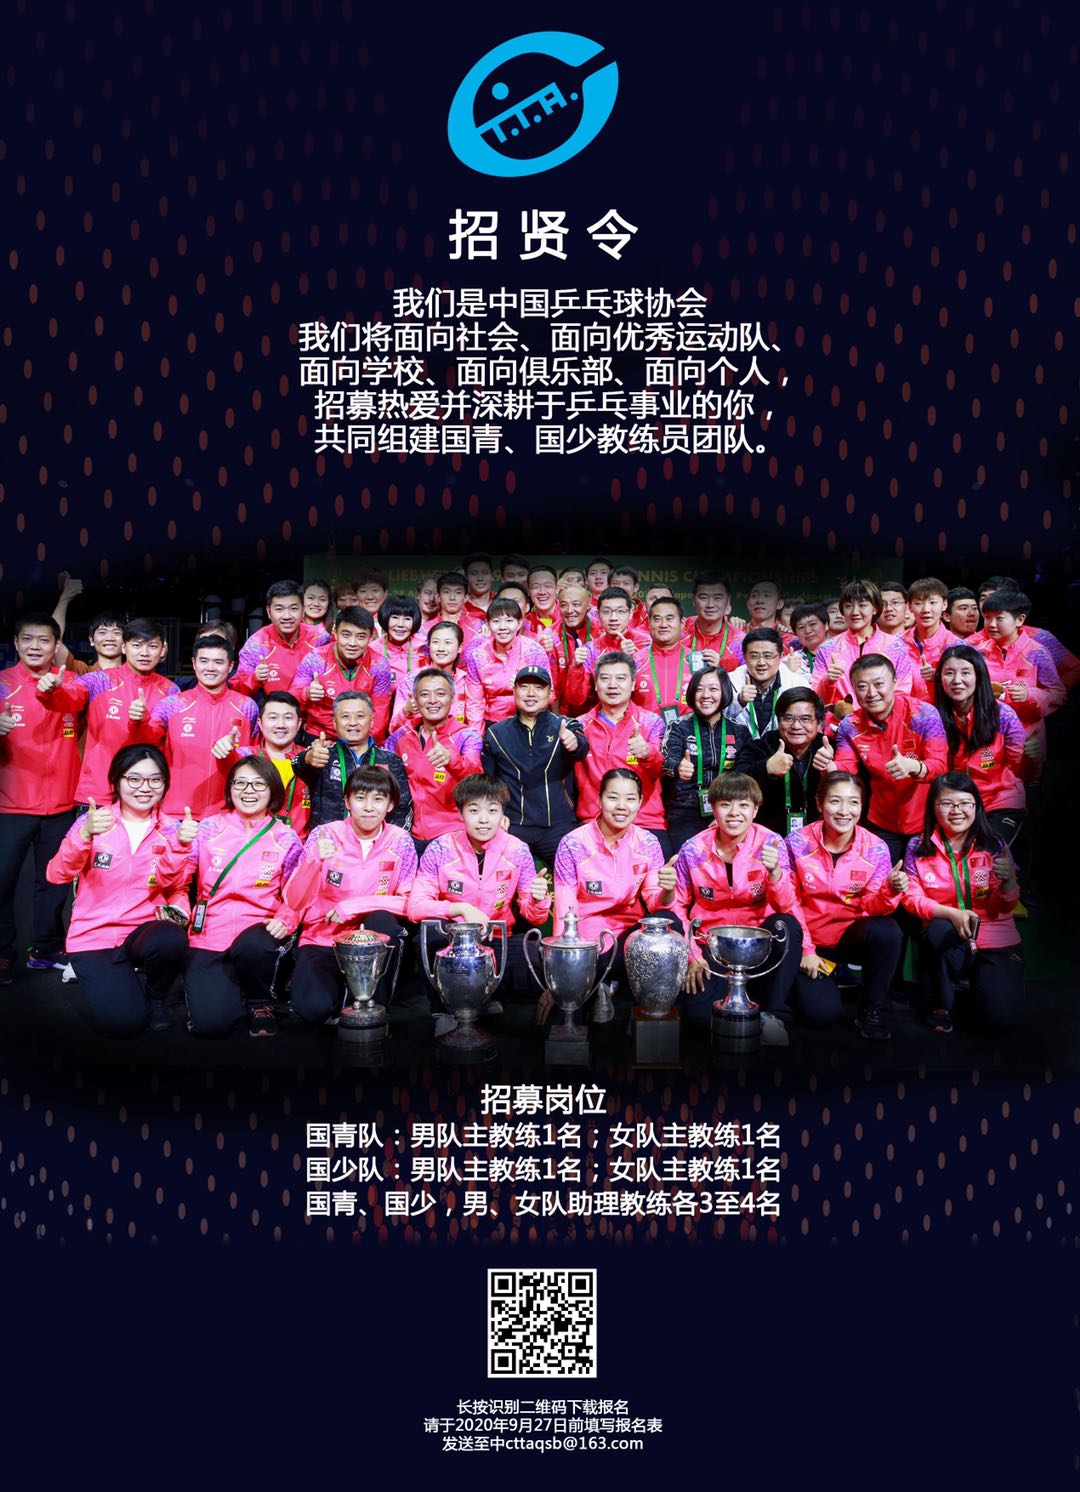 中国乒协将于12月27日至29日举行国乒教练员竞聘与交流活动 - 哔哩哔哩